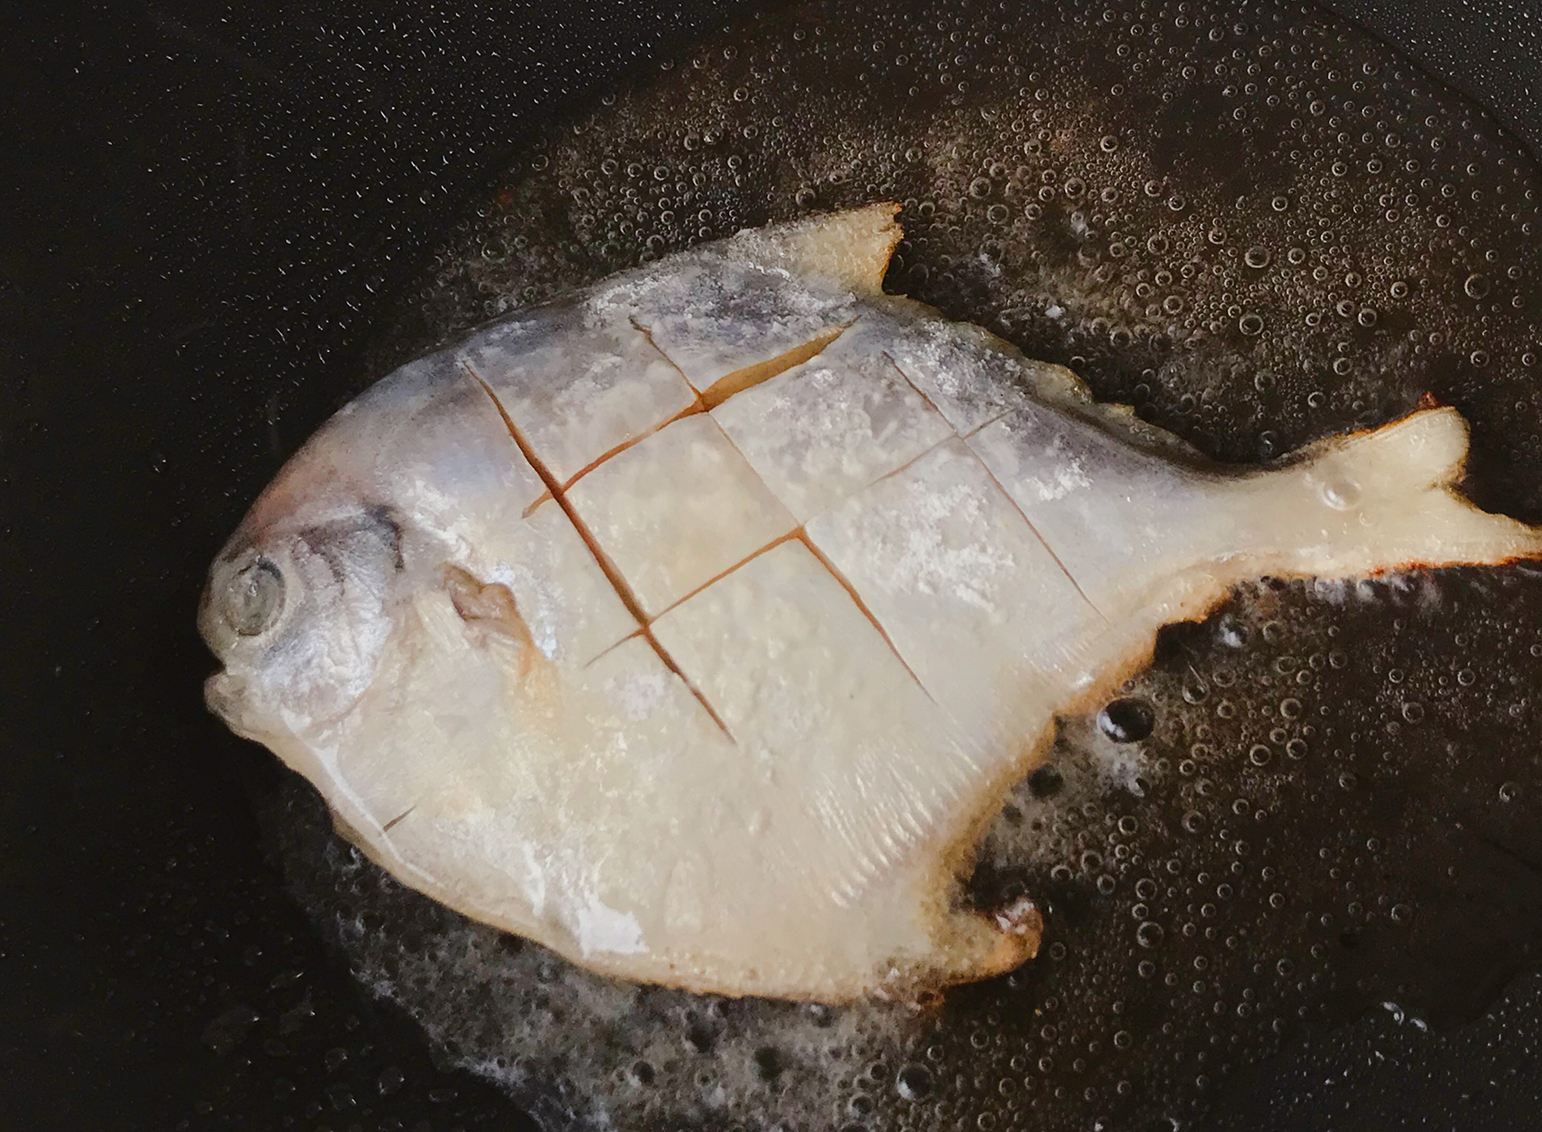 红烧平鱼的做法_【图解】红烧平鱼怎么做如何做好吃_红烧平鱼家常做法大全_常知常味_豆果美食